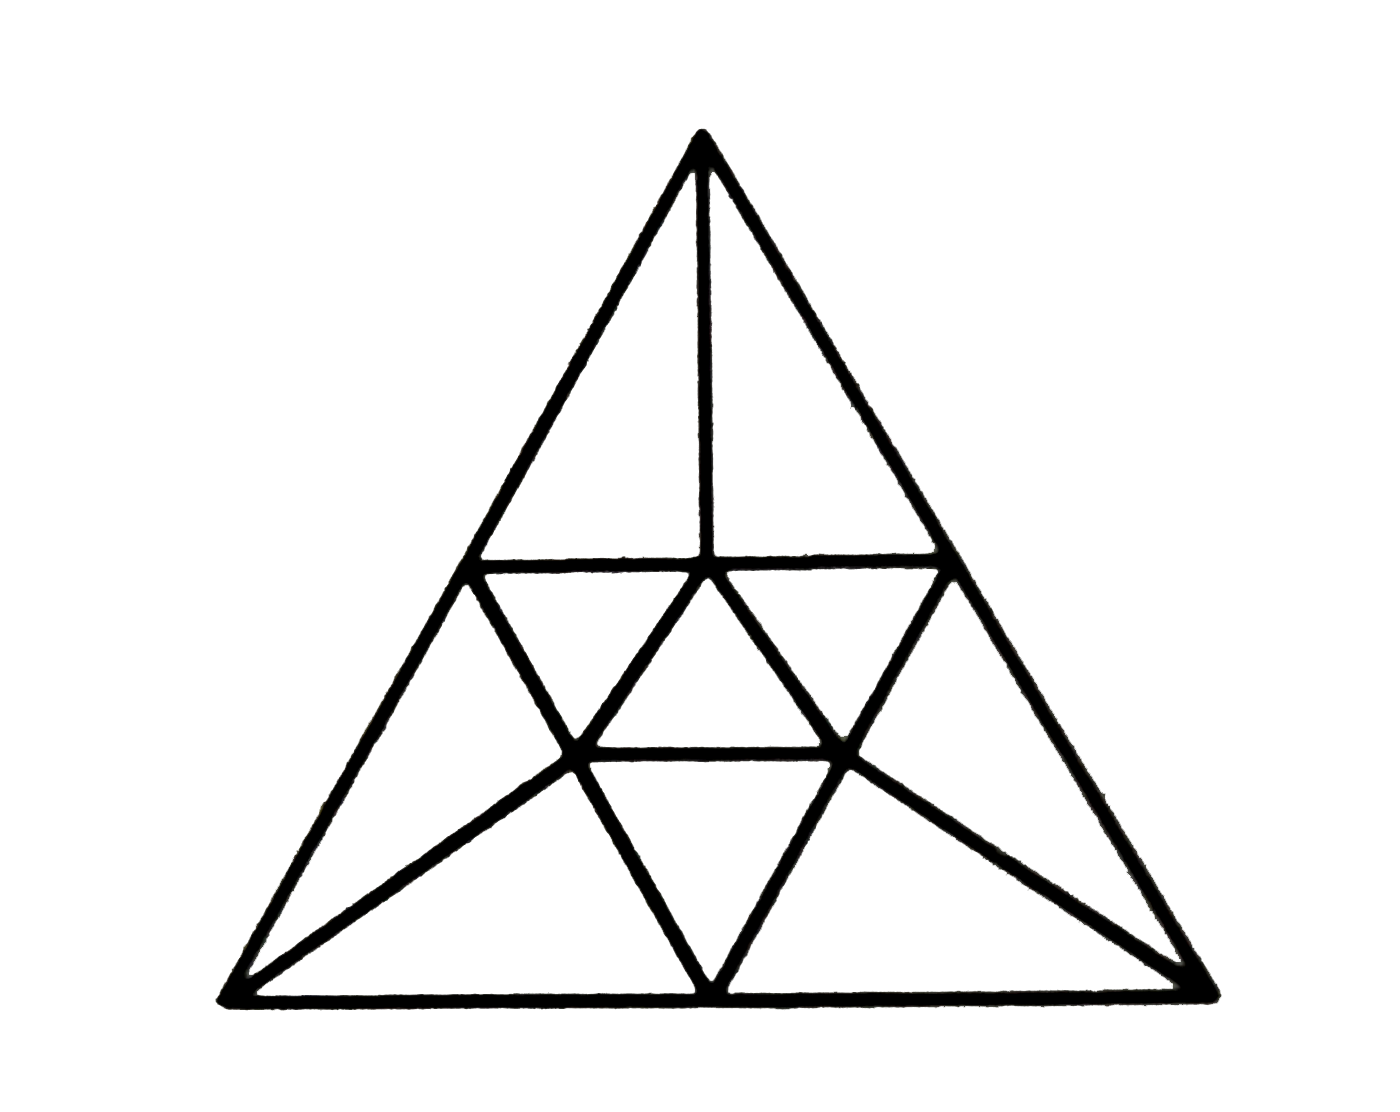 ऊपर रेखा-चित्र में कितने त्रिभुज है ?